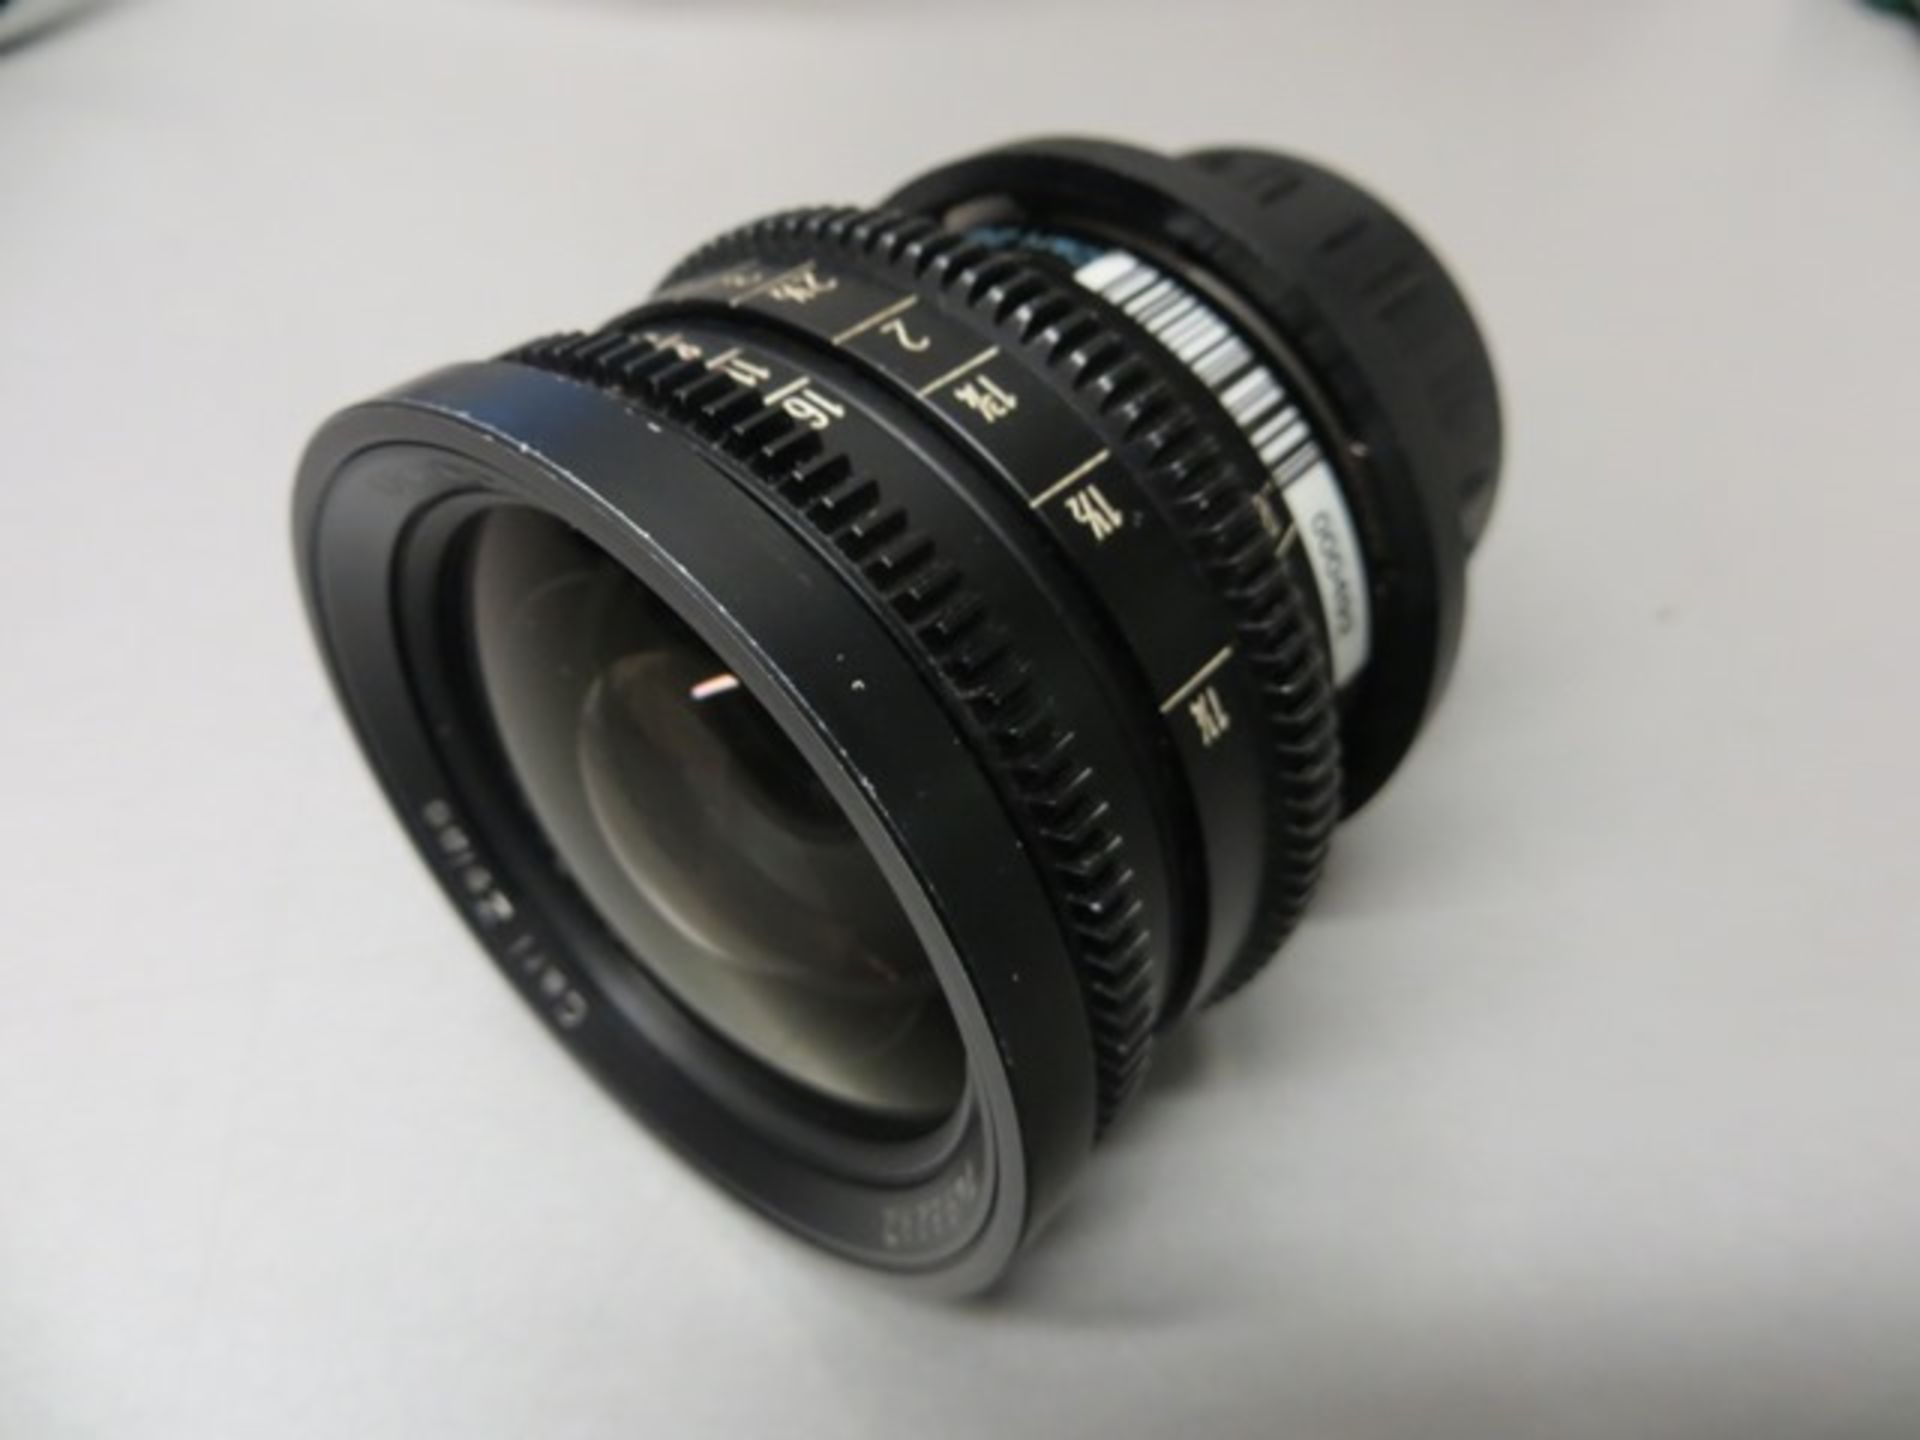 Arriflex Super 16 T 1.3 lens set comprising 9.5mm s/n 7492122, 12mm s/n 7492232, 16mm s/n - Image 5 of 6